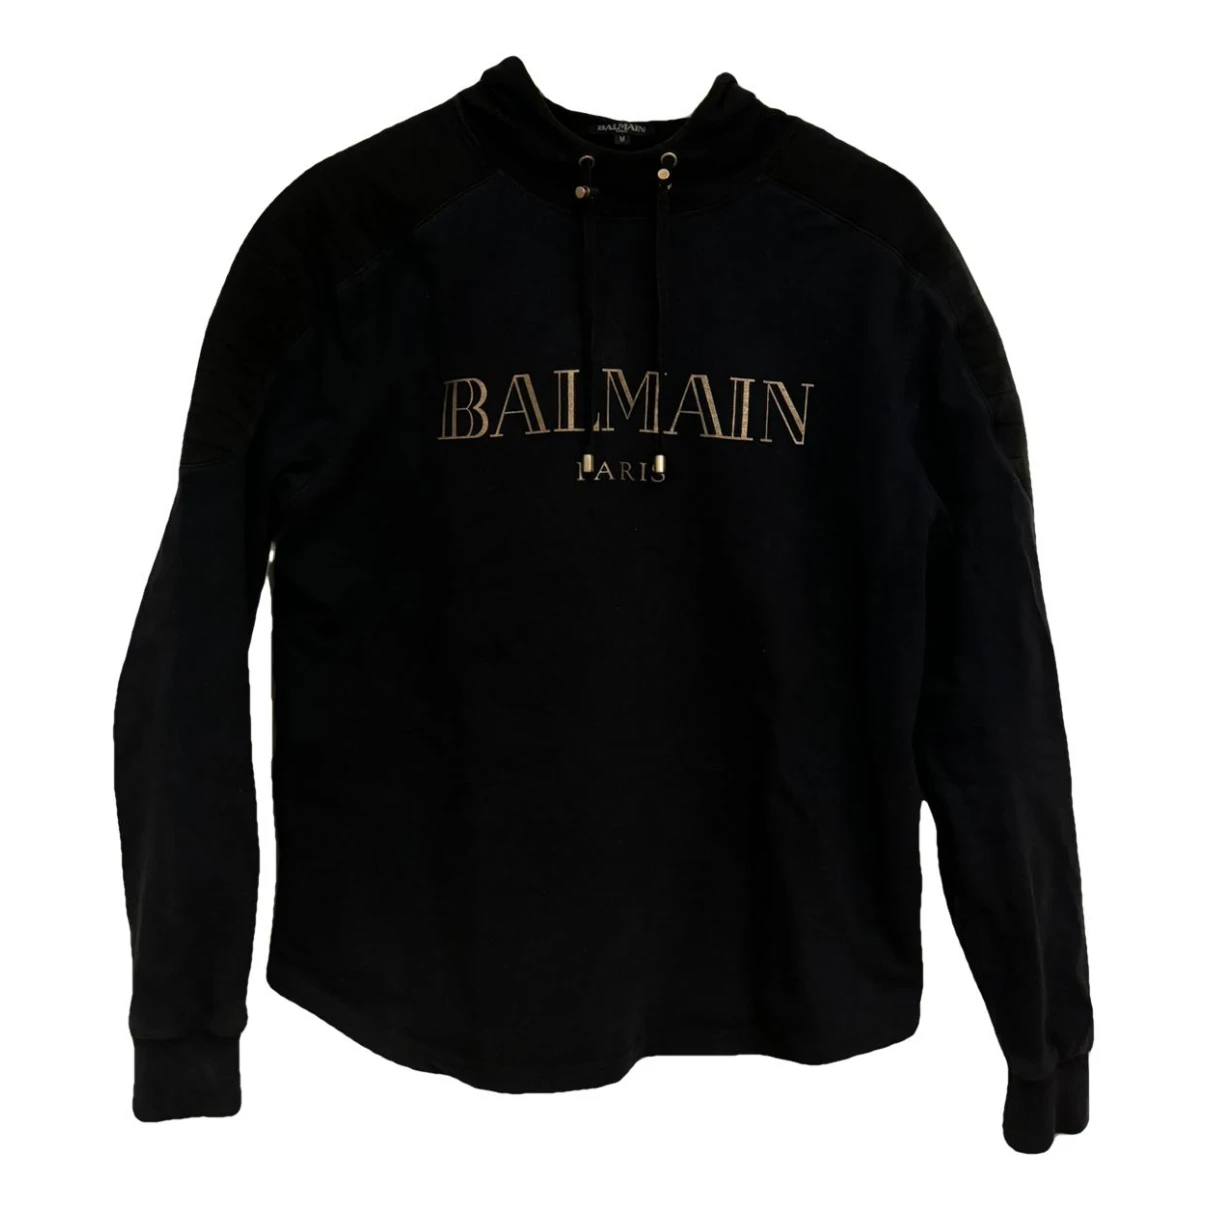 Pre-owned Balmain Sweatshirt In Navy